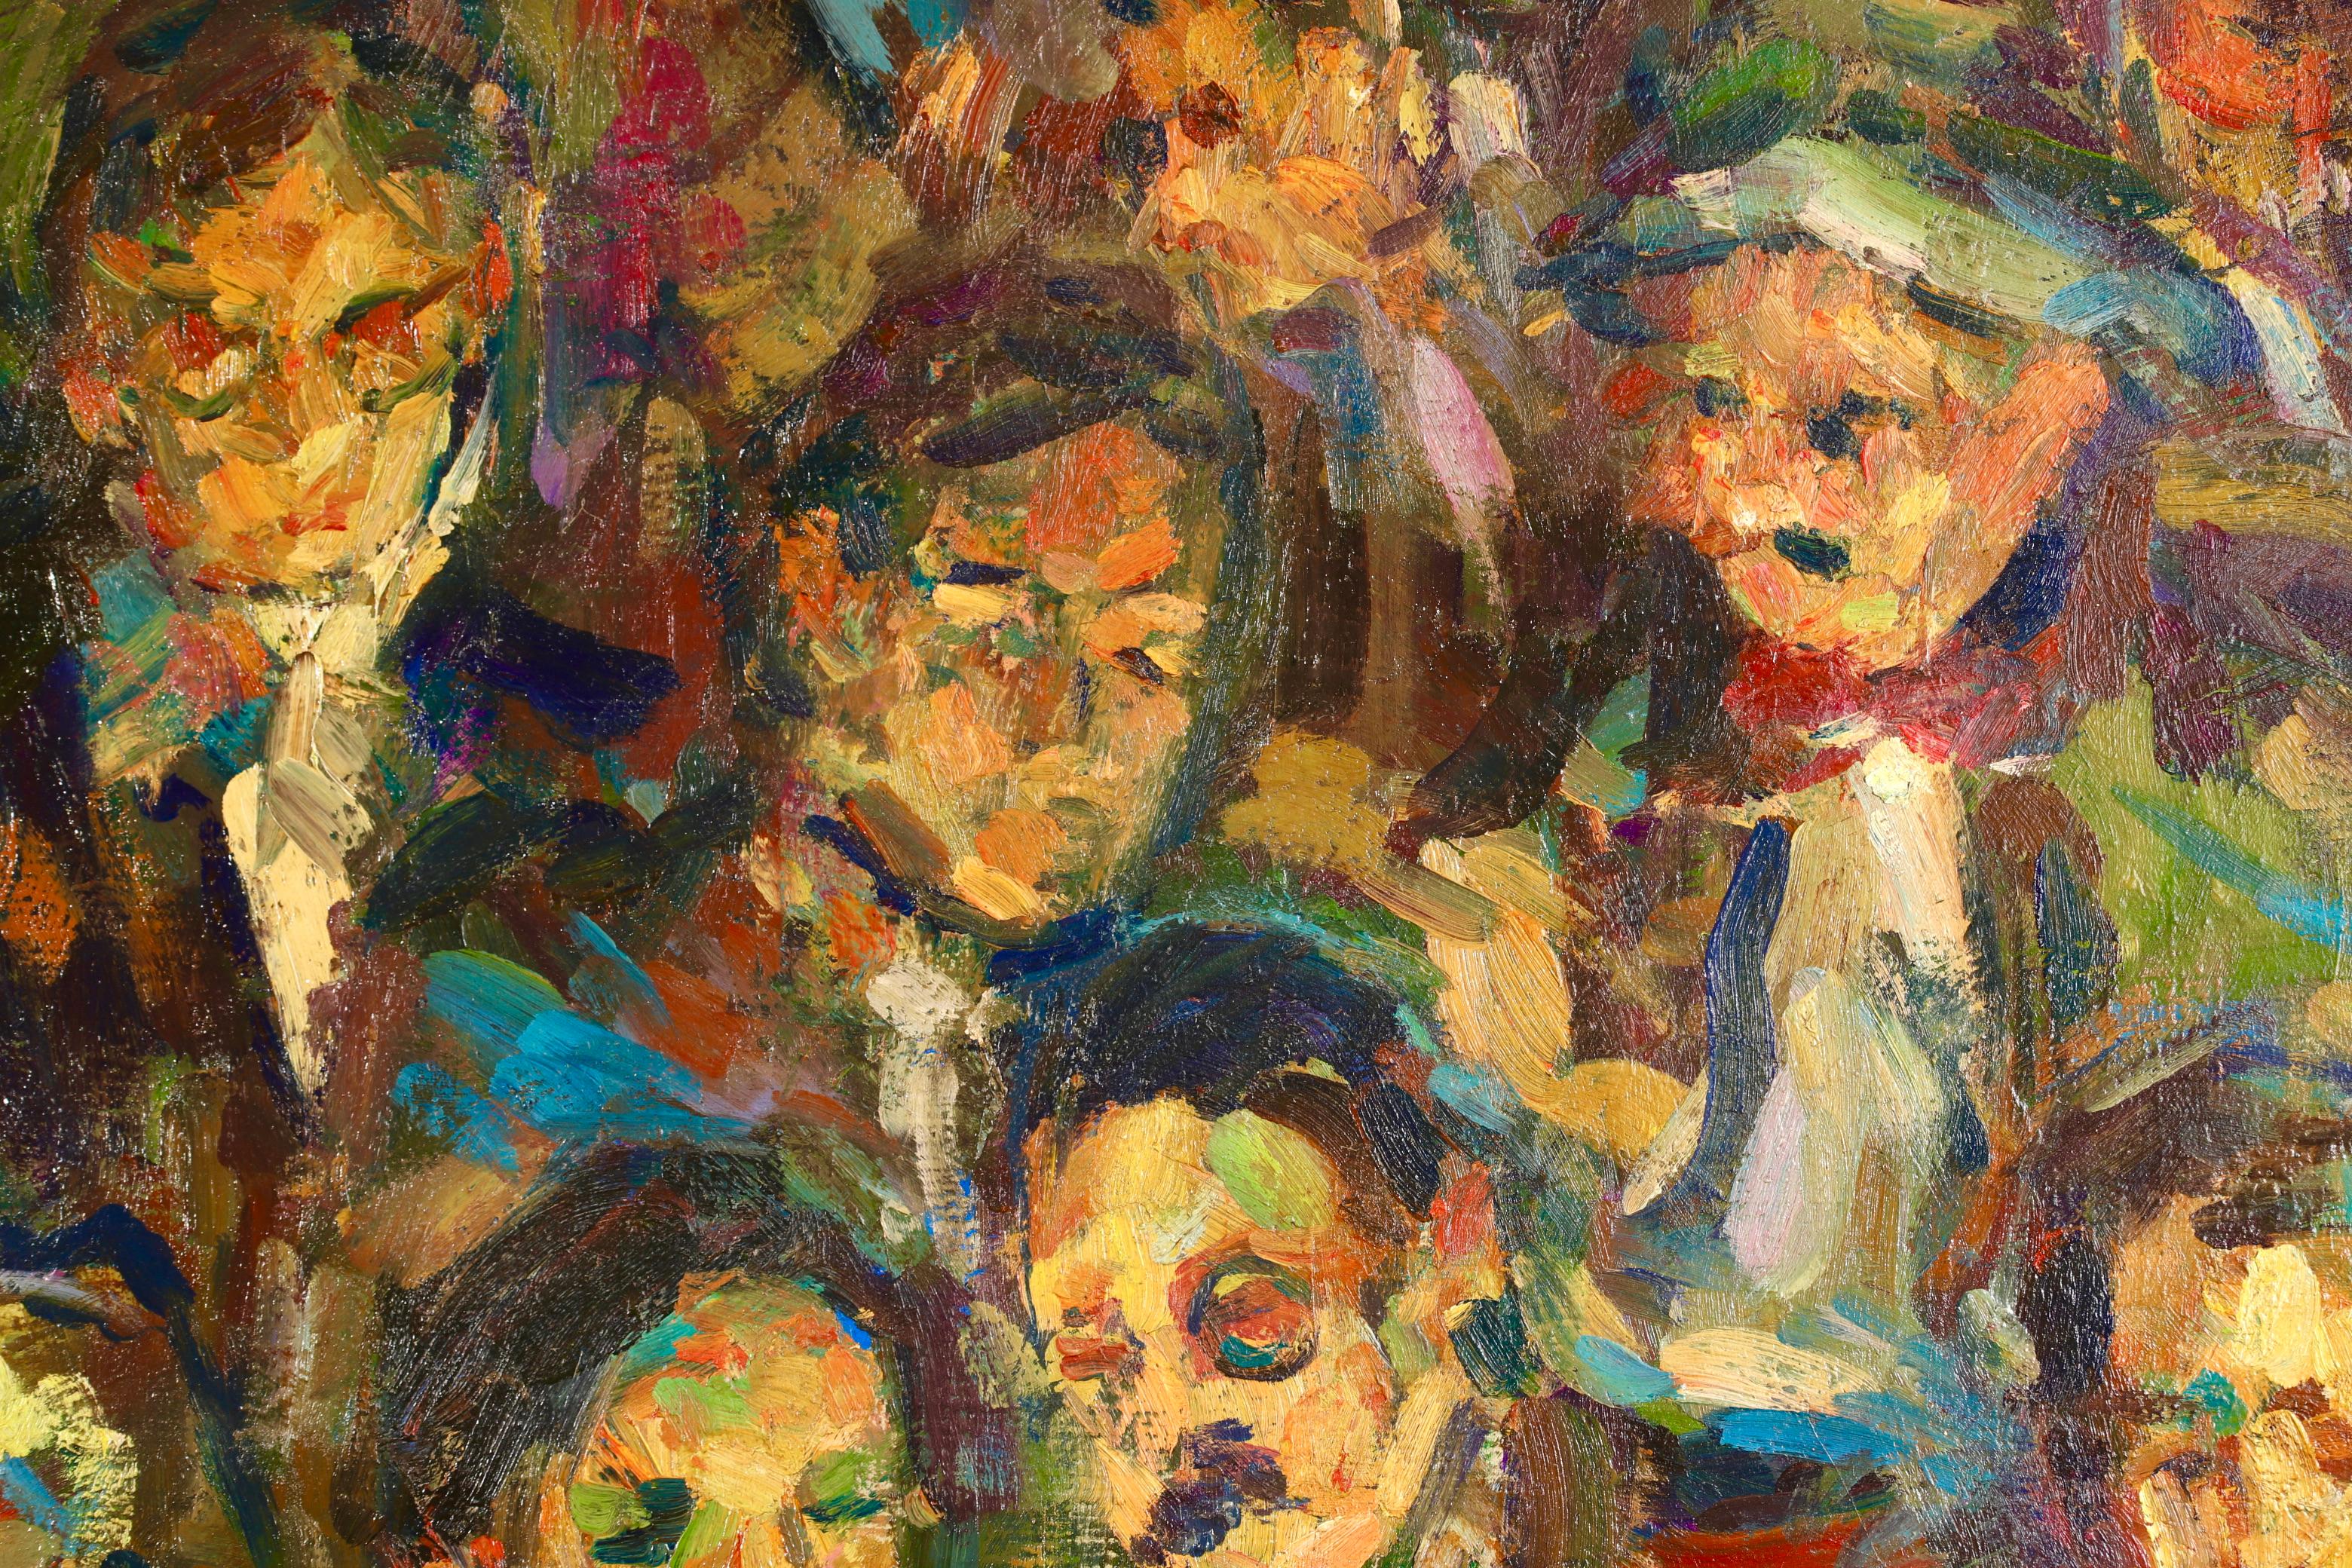 Huile figurative sur toile signée vers 1920 par le peintre post impressionniste d'origine russe Elie Anatole Pavil. Cette œuvre magnifiquement colorée représente des hommes et une femme assis dans un théâtre et regardant par-dessus un